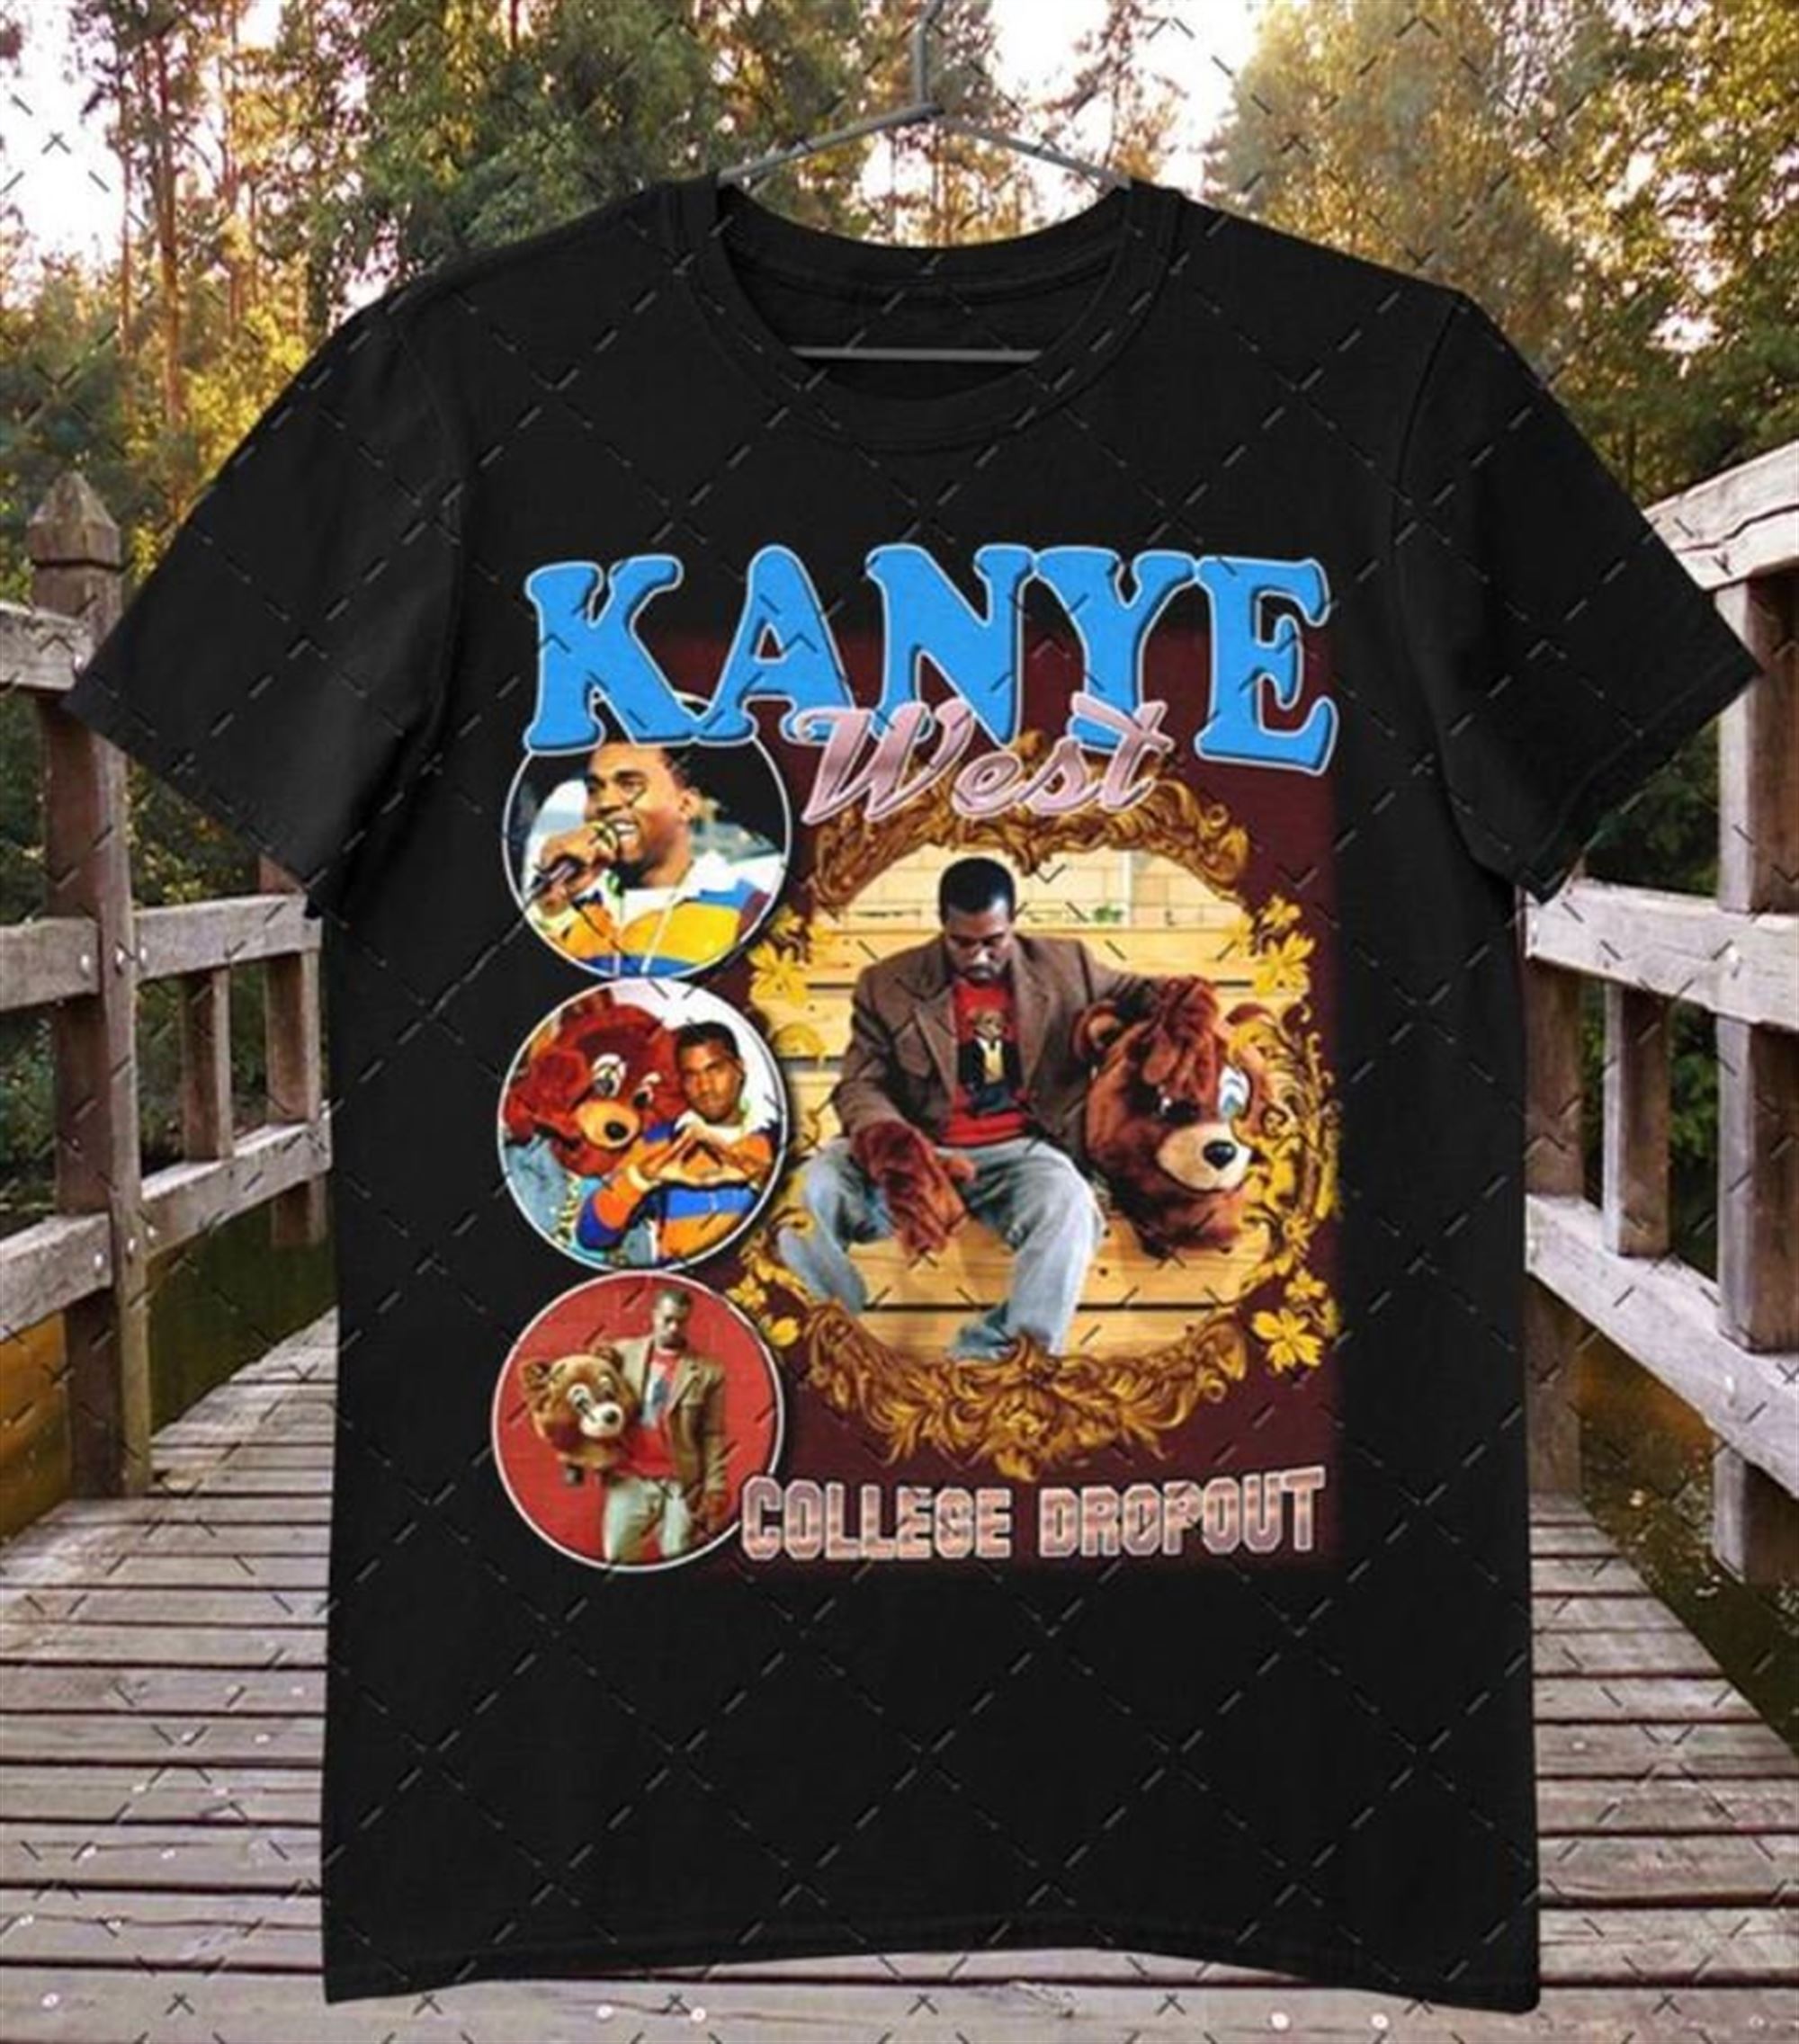 Vintage Kanye West College Dropout T-Shirt Funny Vintage Gift Men Women